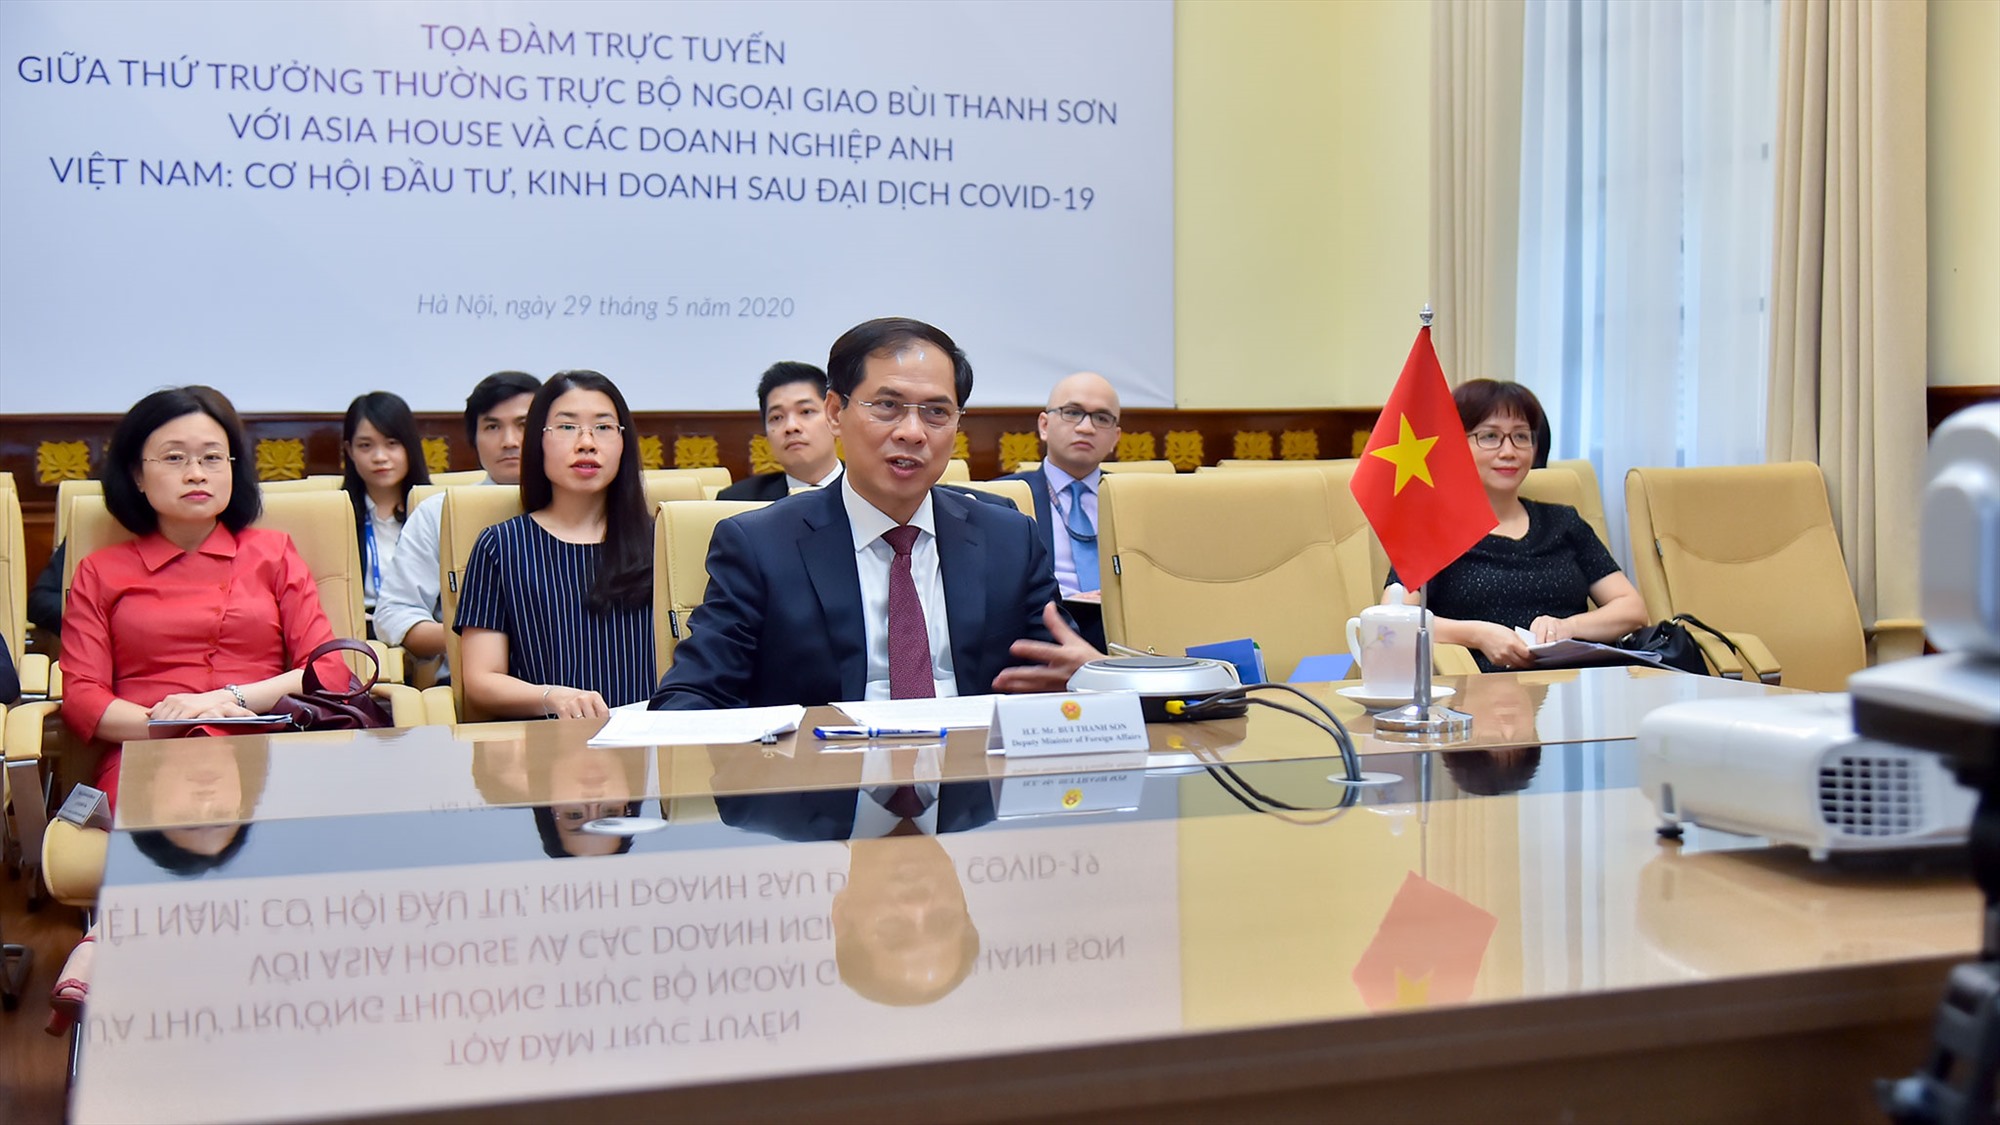 Thứ trưởng Thường trực Bộ Ngoại giao Bùi Thanh Sơn dự tọa đàm trực tuyến với chủ đề “Việt Nam: Cơ hội đầu tư, kinh doanh sau đại dịch COVID-19”